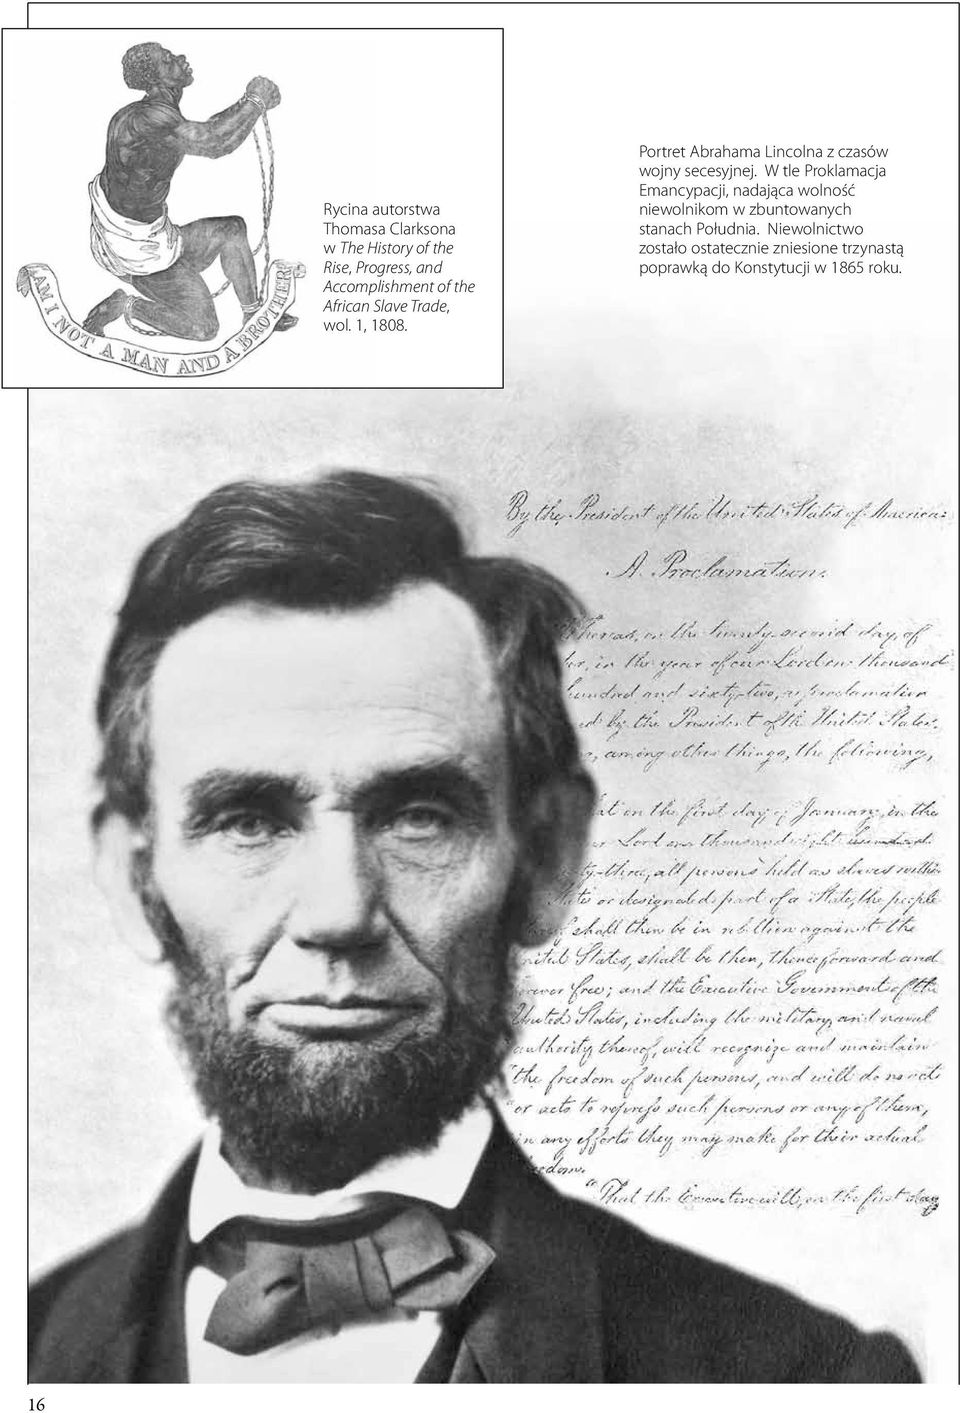 Portret Abrahama Lincolna z czasów wojny secesyjnej.